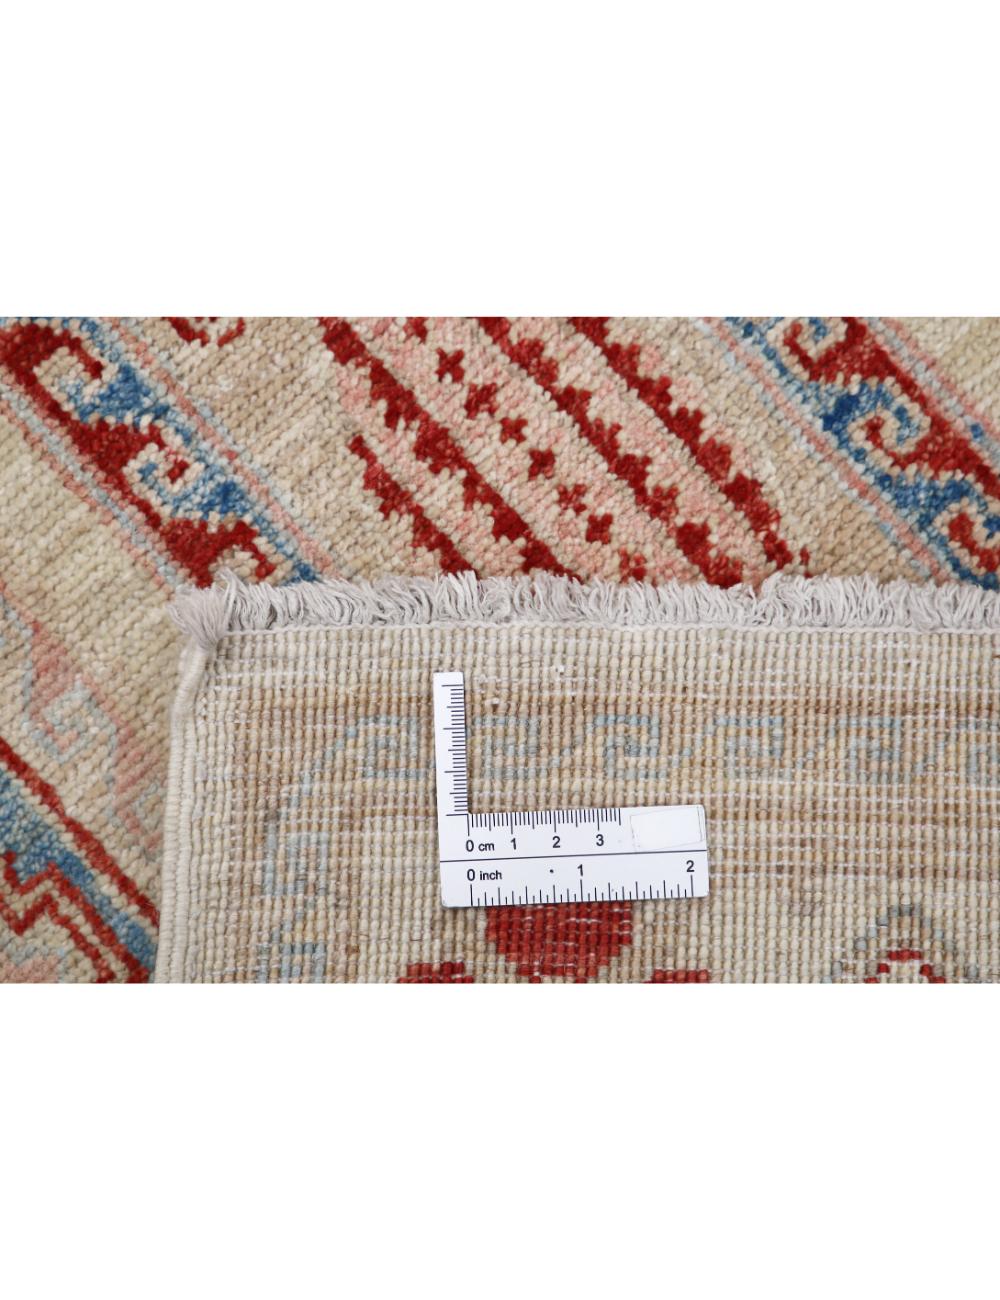 Hand Knotted Bakhtiari Wool Rug - 2'6'' x 7'1'' Arteverk Arteverk Rugs